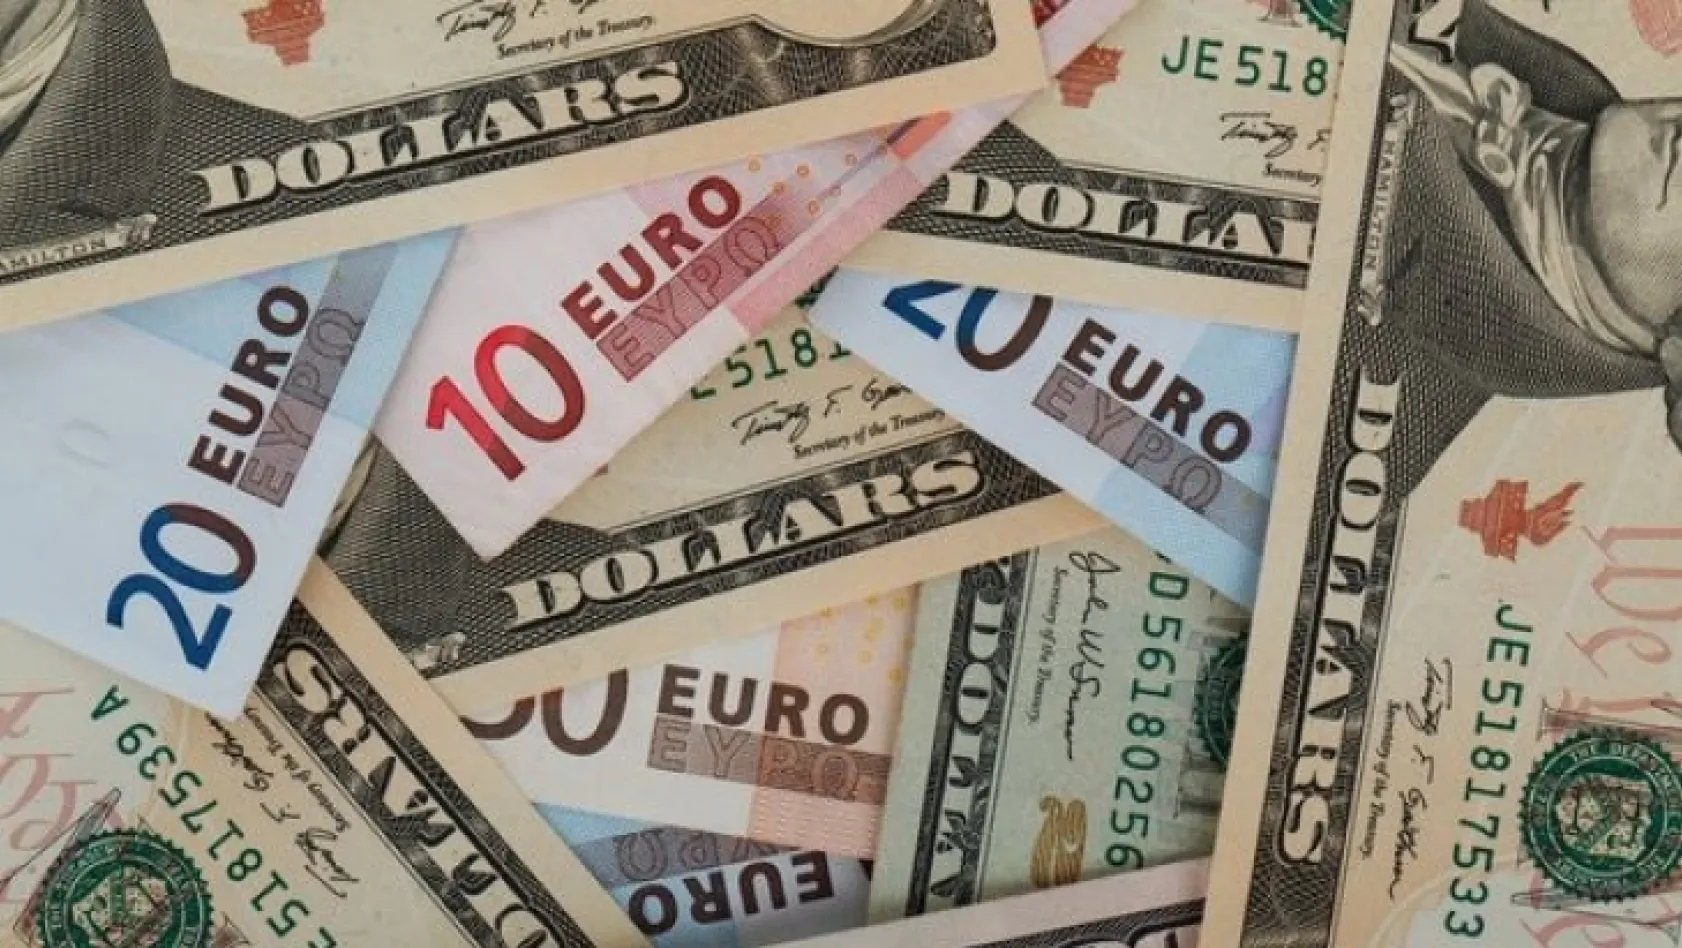 Dolar ve euro ne kadar? (28 Ağustos 2018 dolar - euro fiyatları)